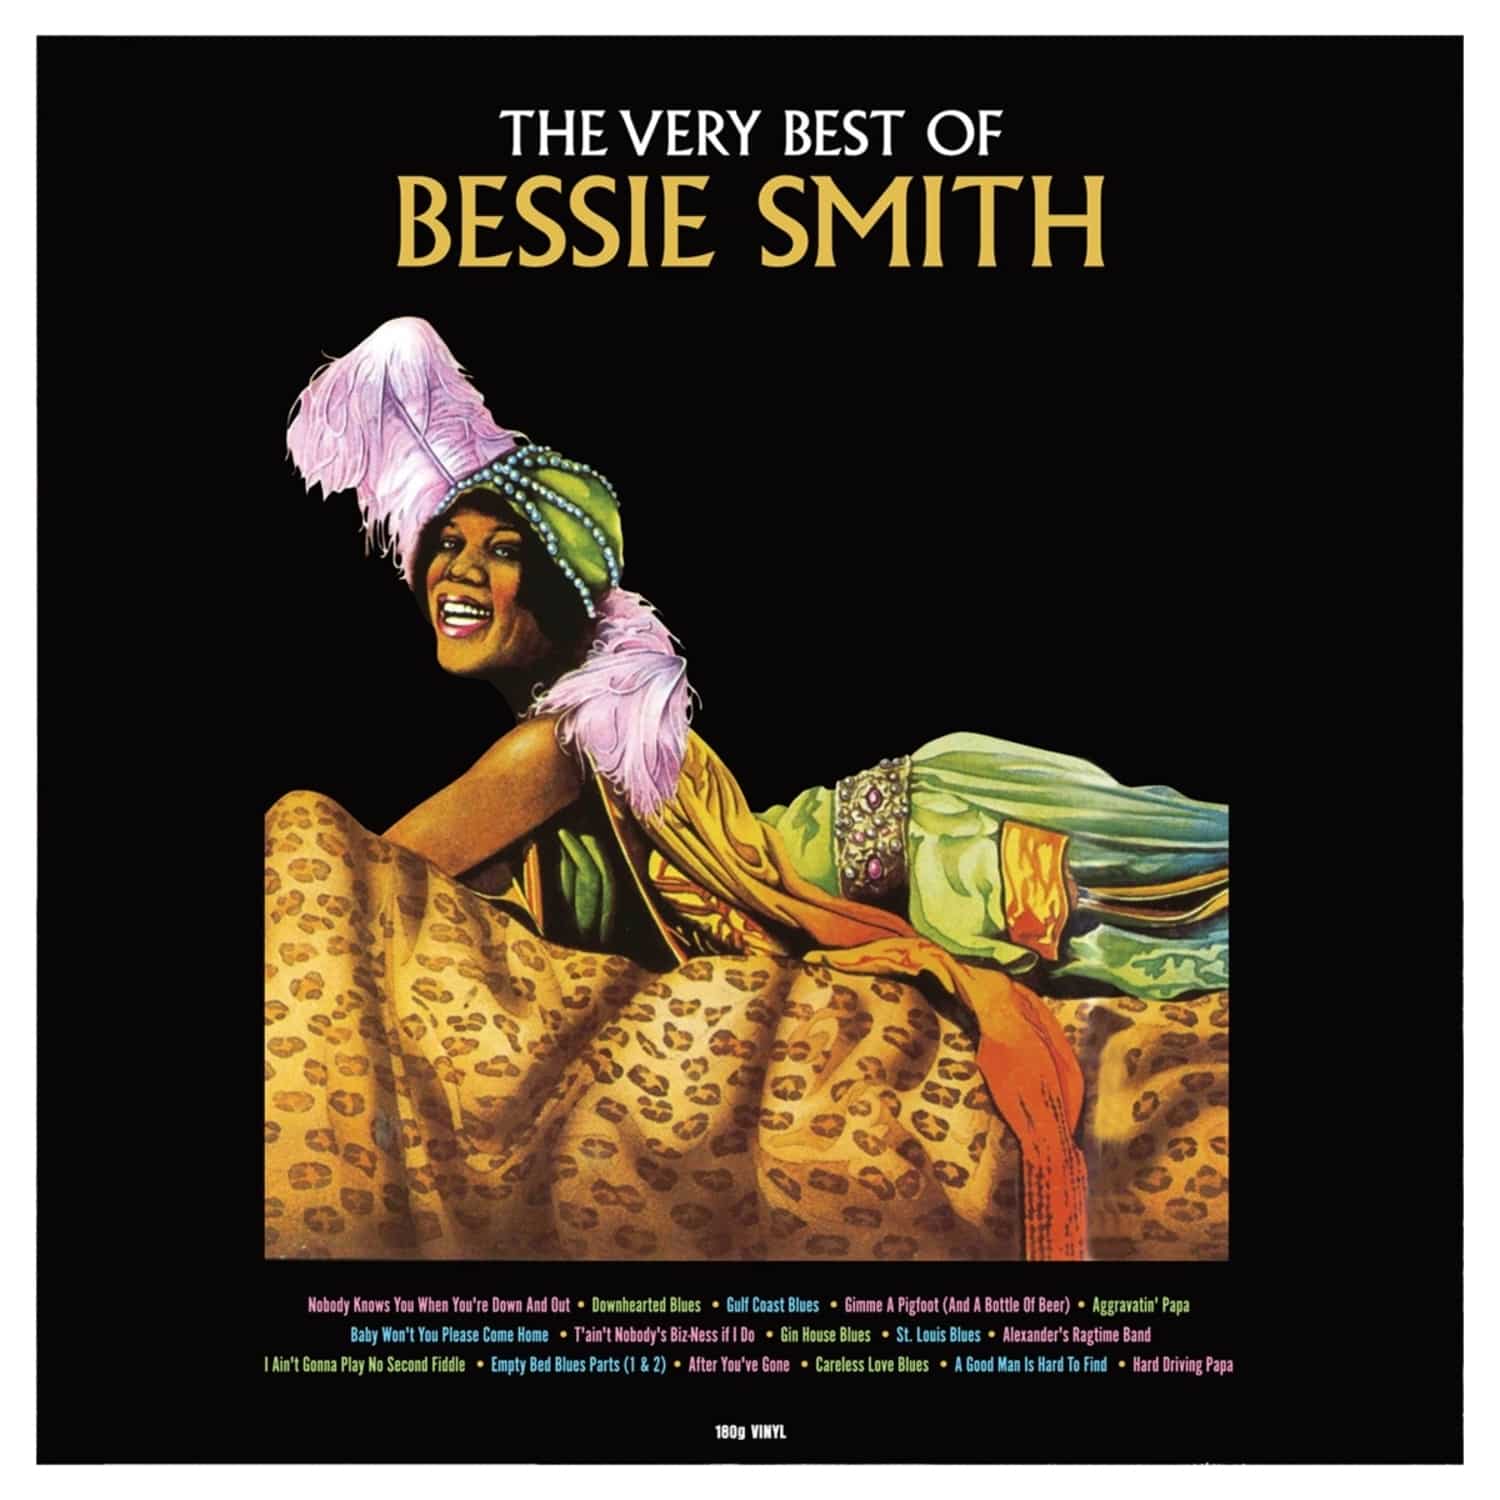  Bessie Smith - VERY BEST OF 